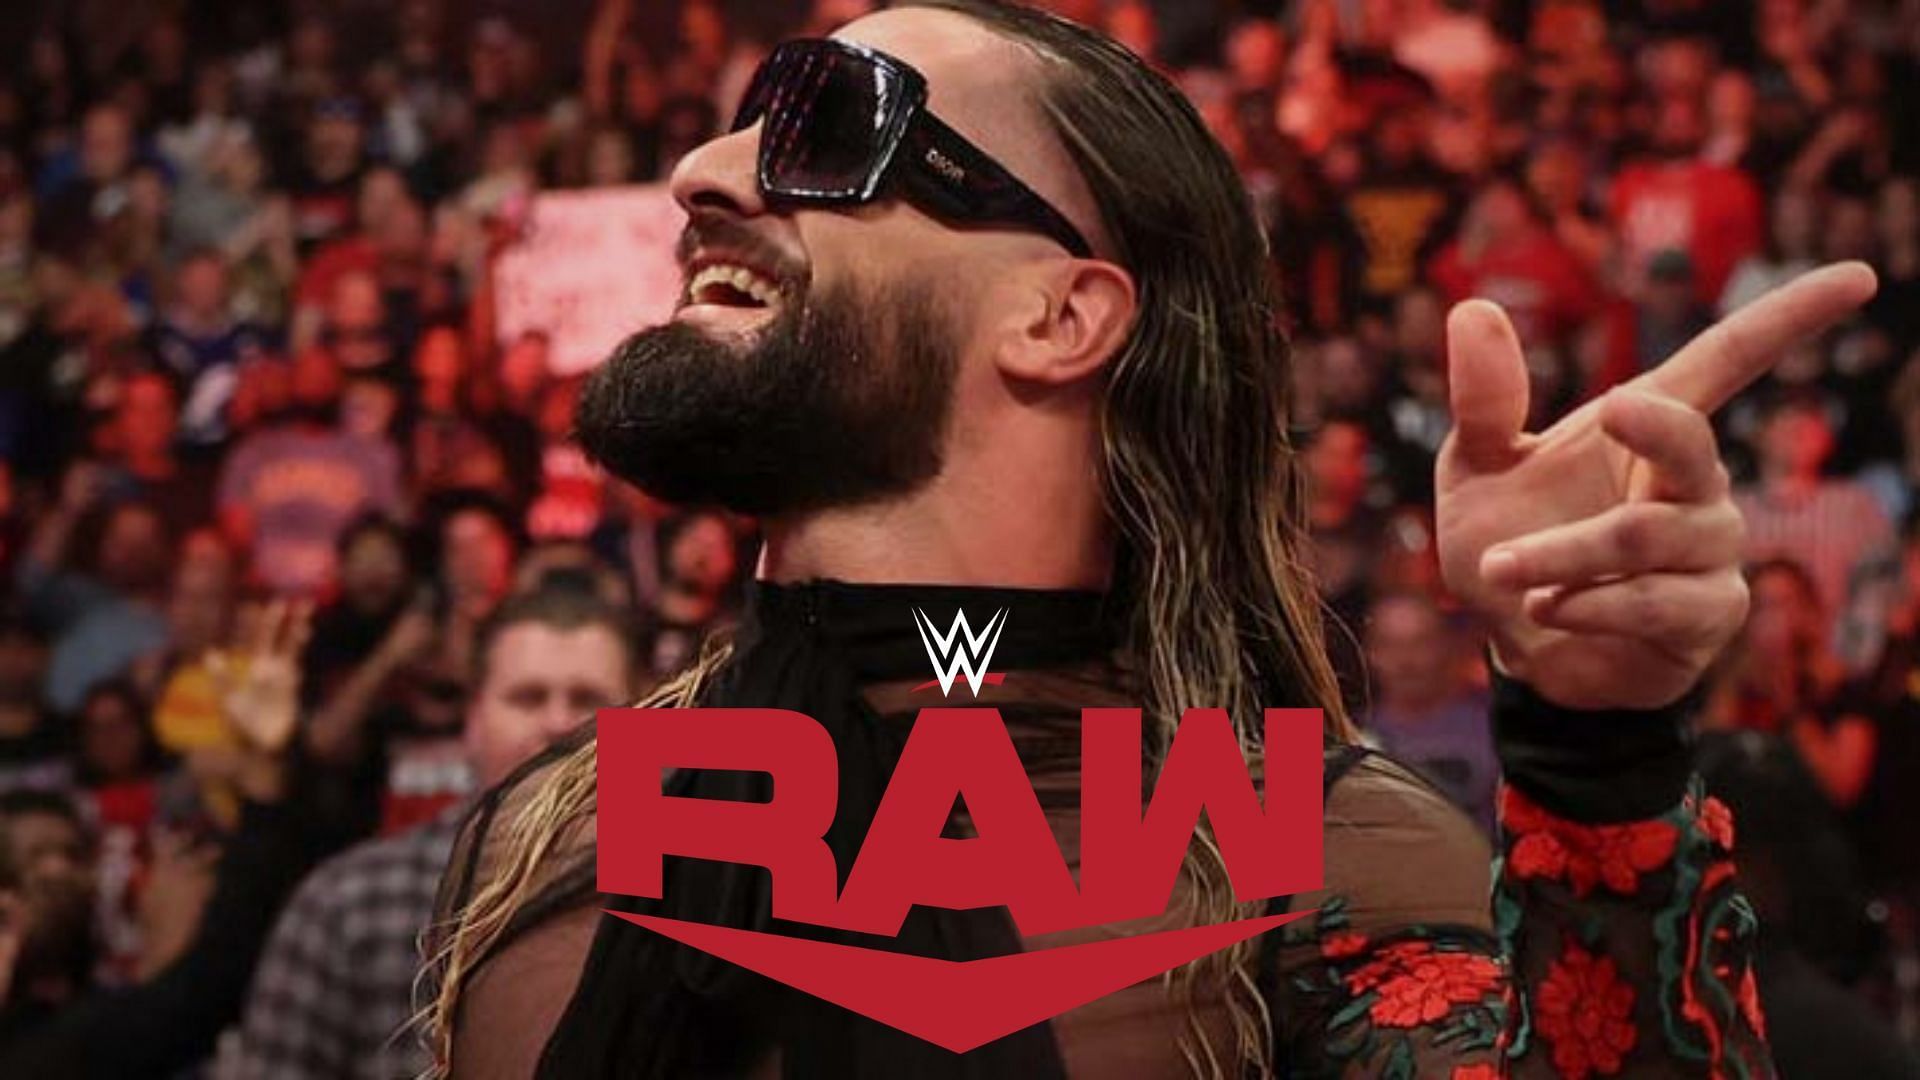 WWE World Heavyweight Champion, Seth Rollins